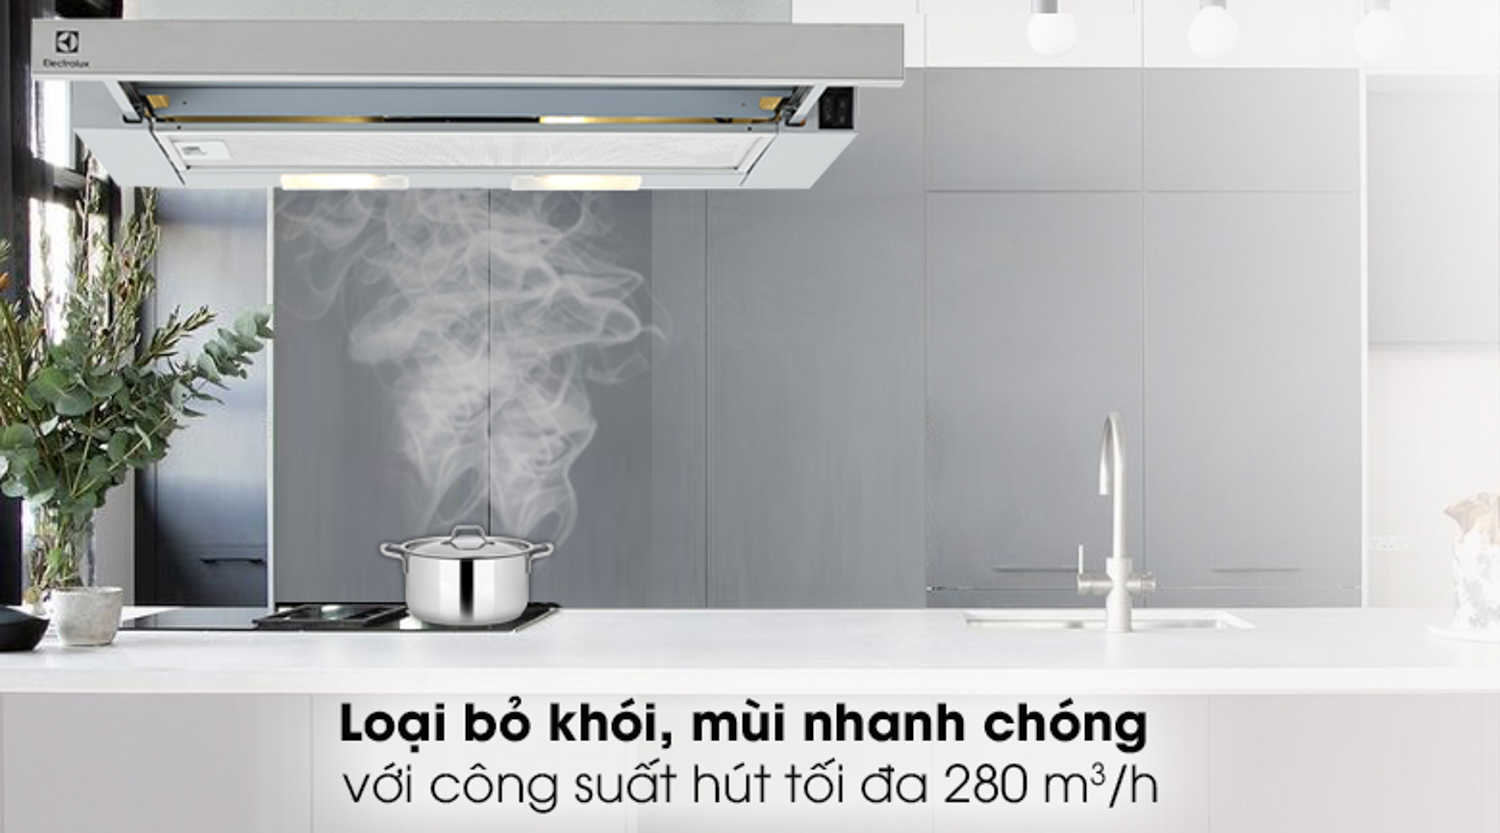 Loại bỏ khói, mùi với công suất hút tối đa 280 m³/h